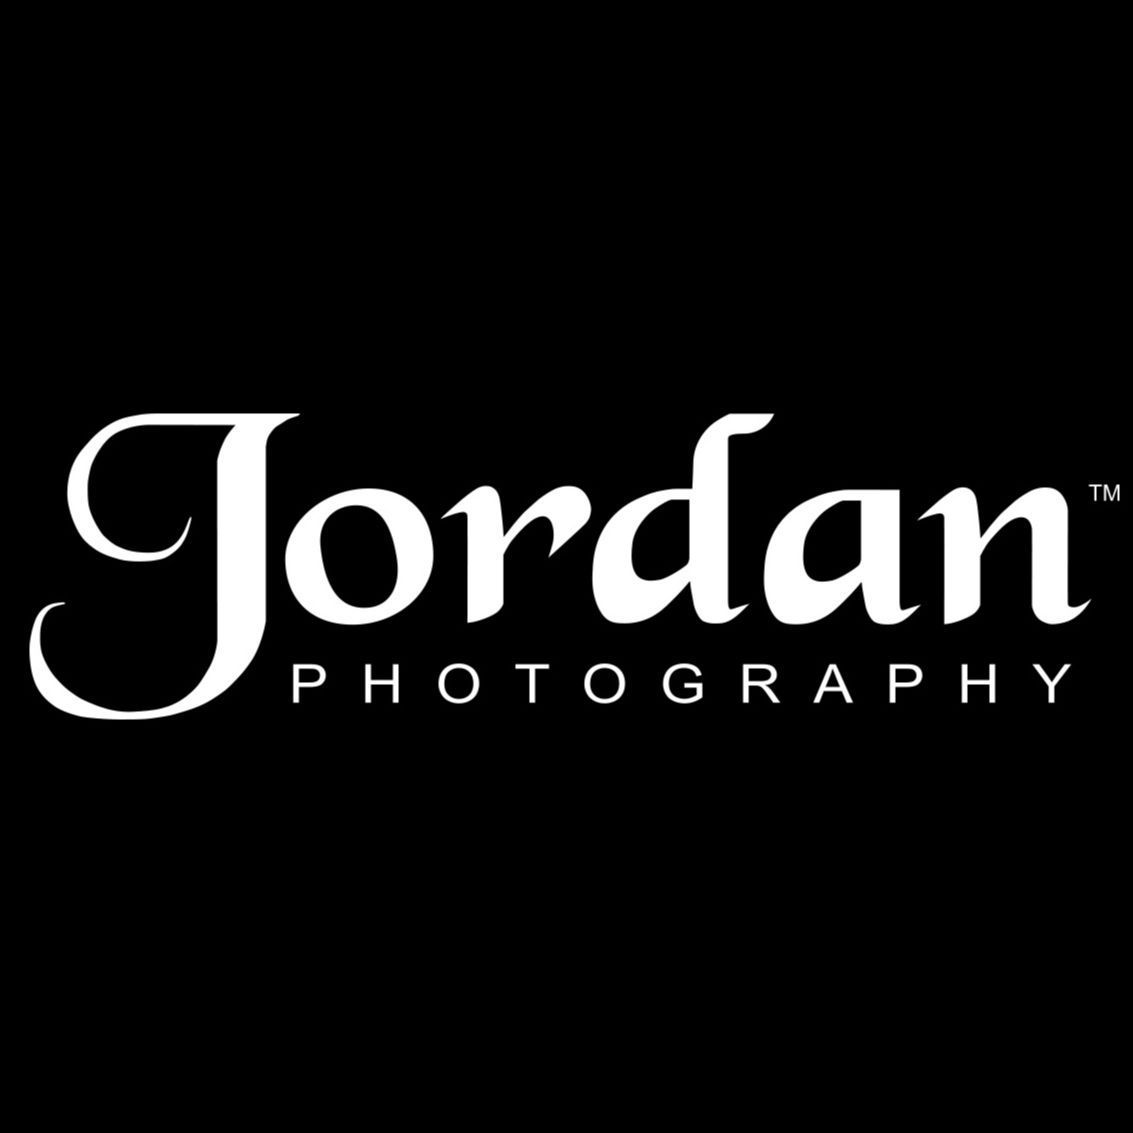 Photographer A - Jordan Photography